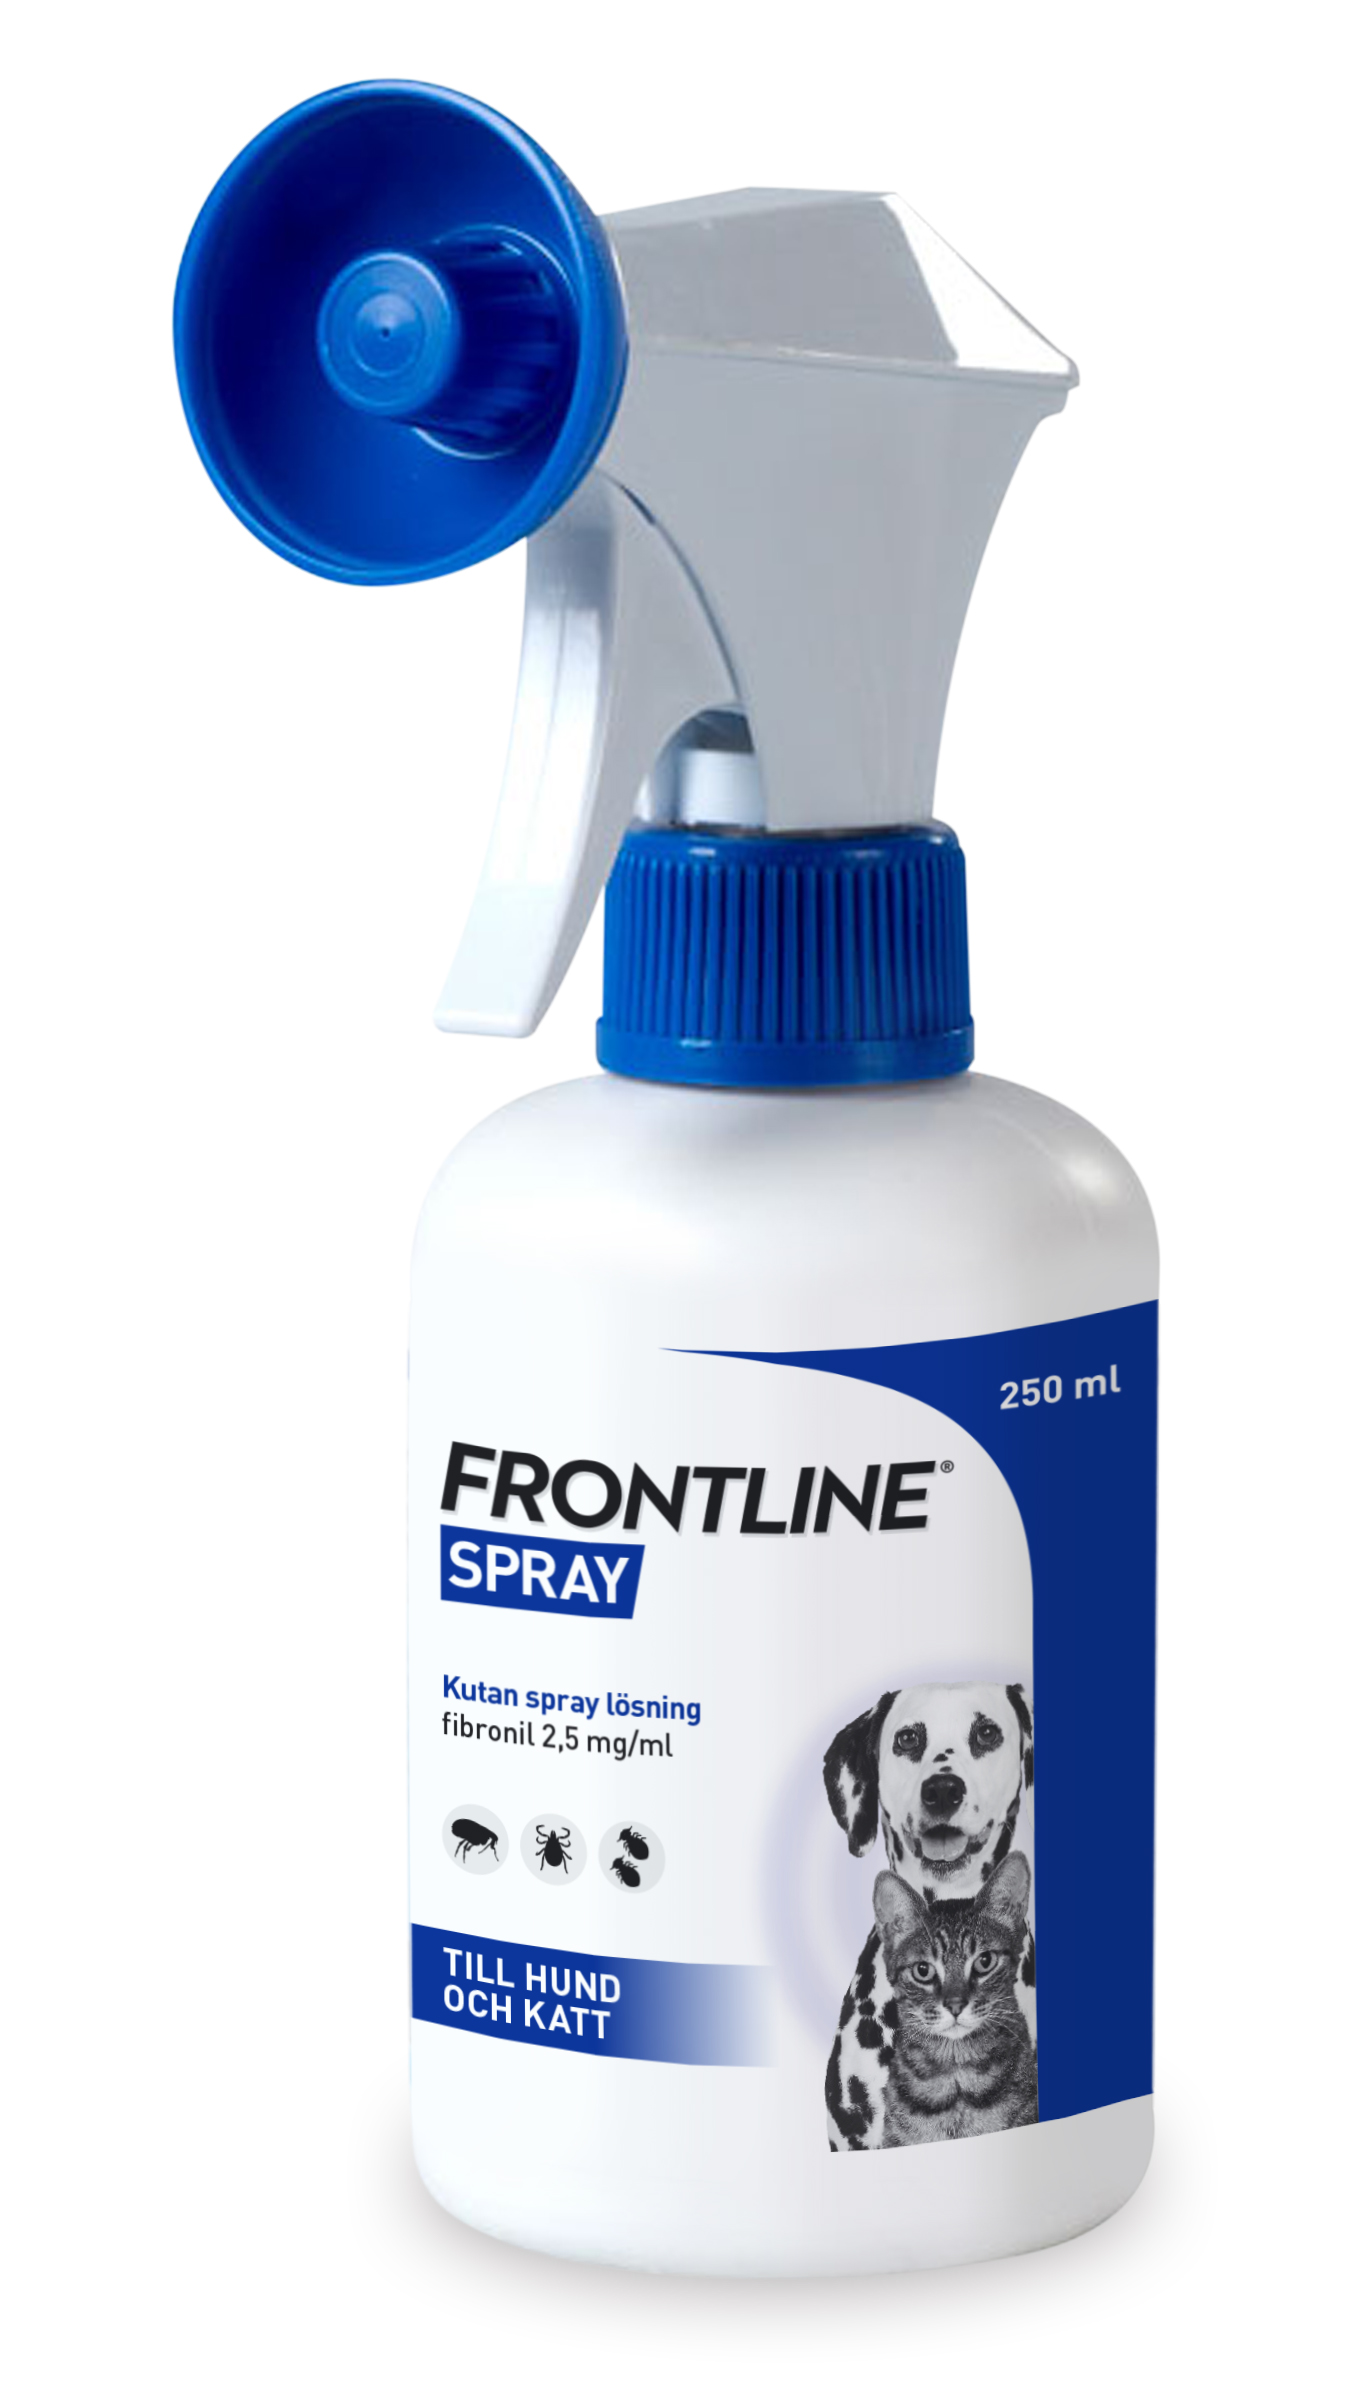 Frontline Vet 2,5 mg/ml kutan spray, 250ml